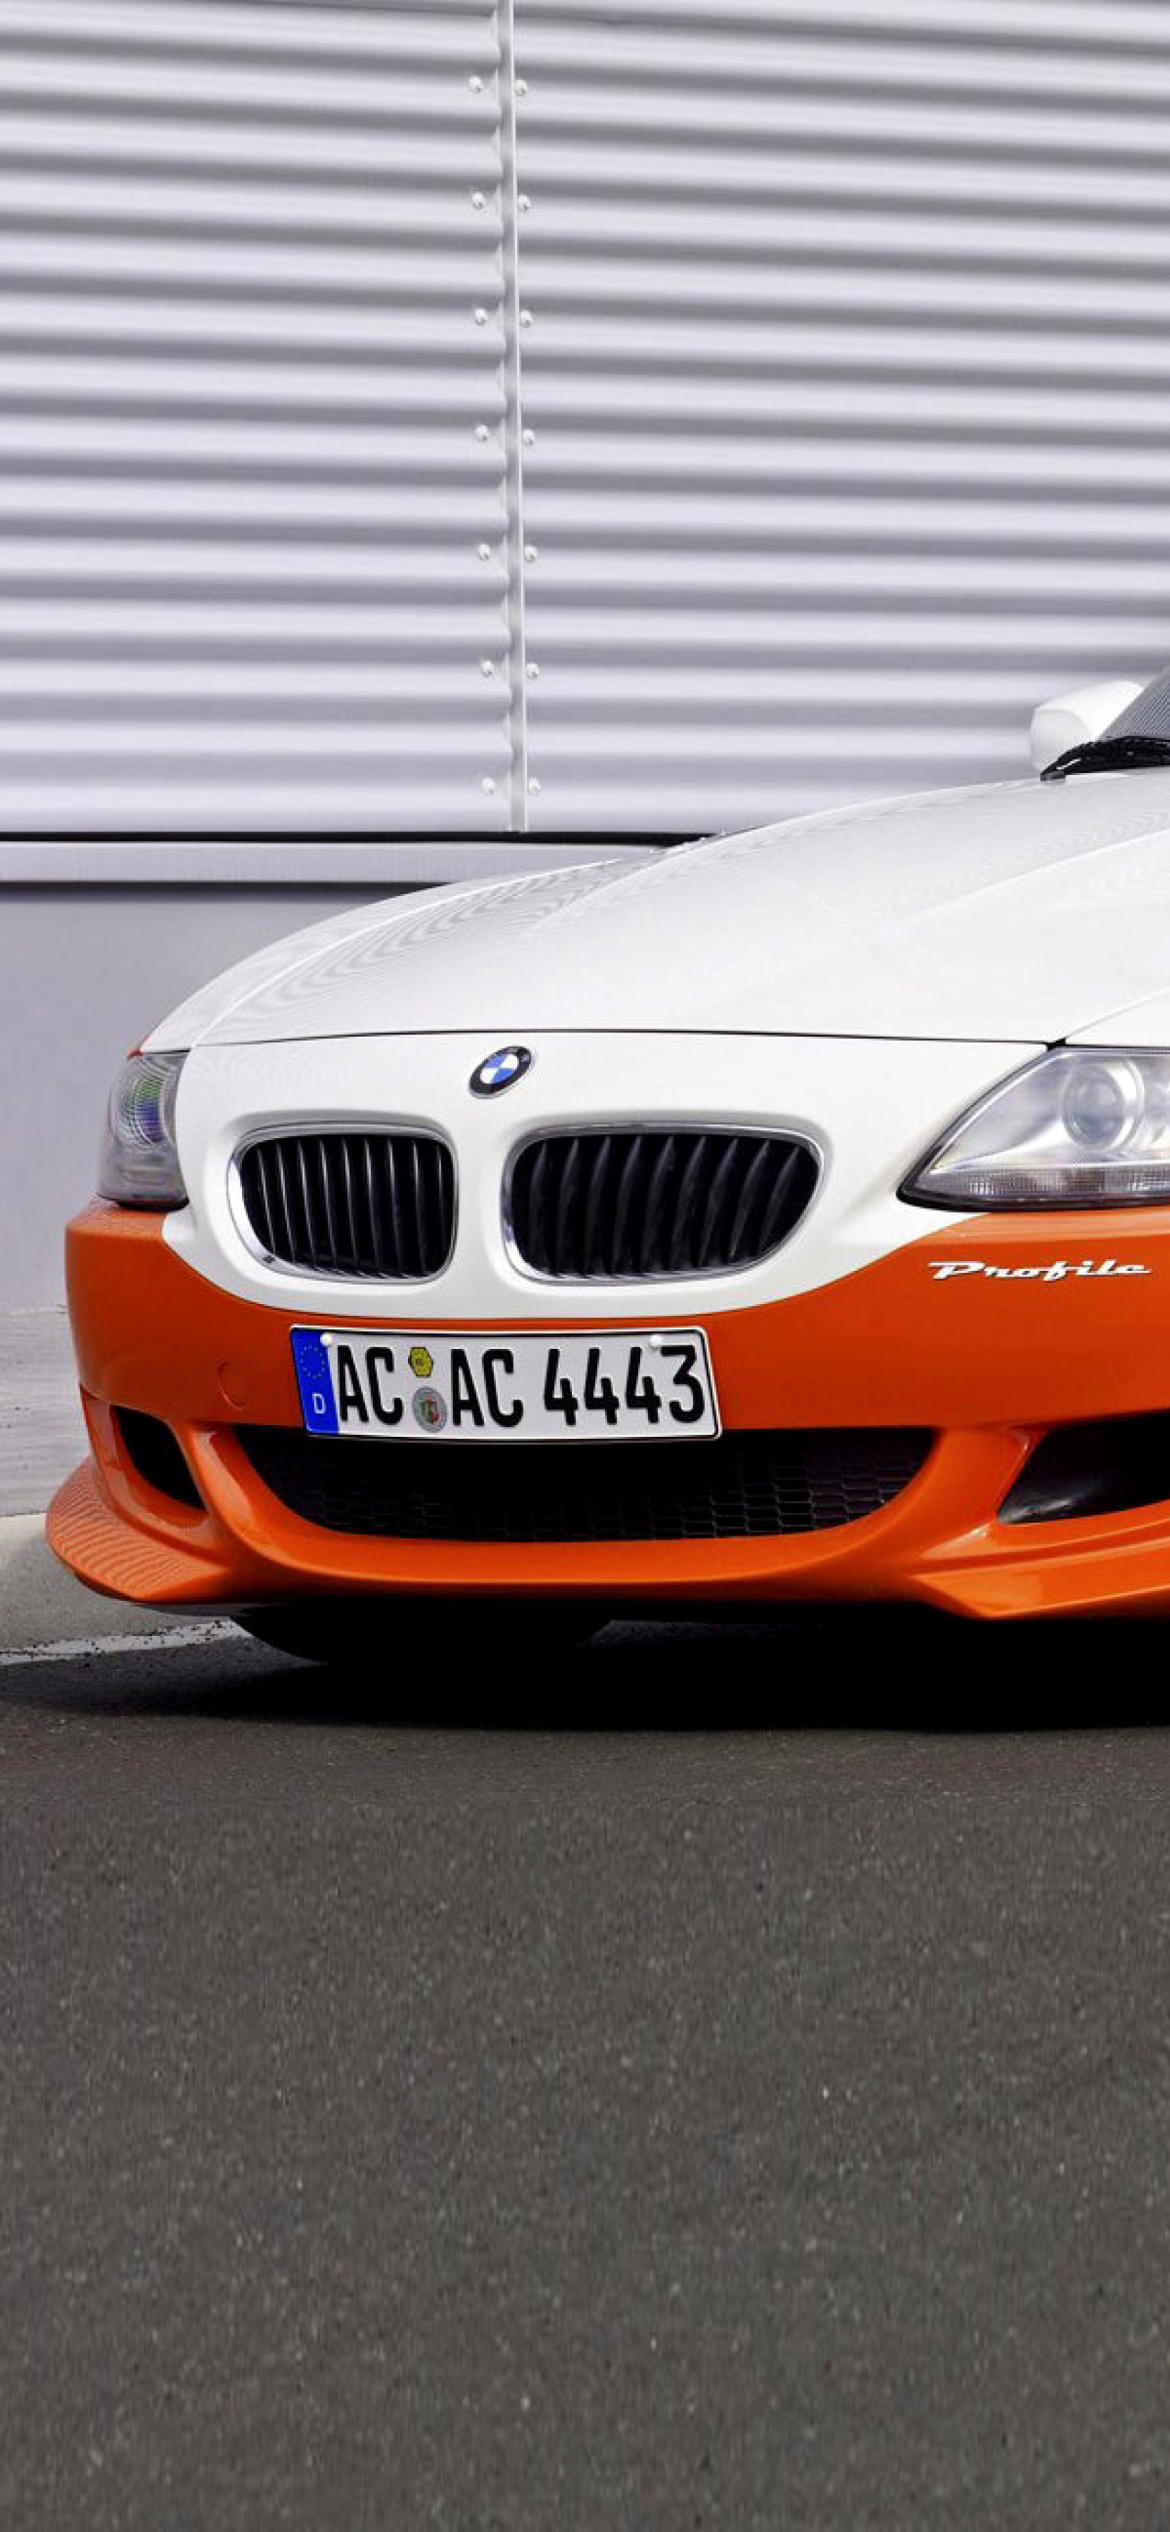 Fondo de pantalla BMW Z4 M Coupe 1170x2532